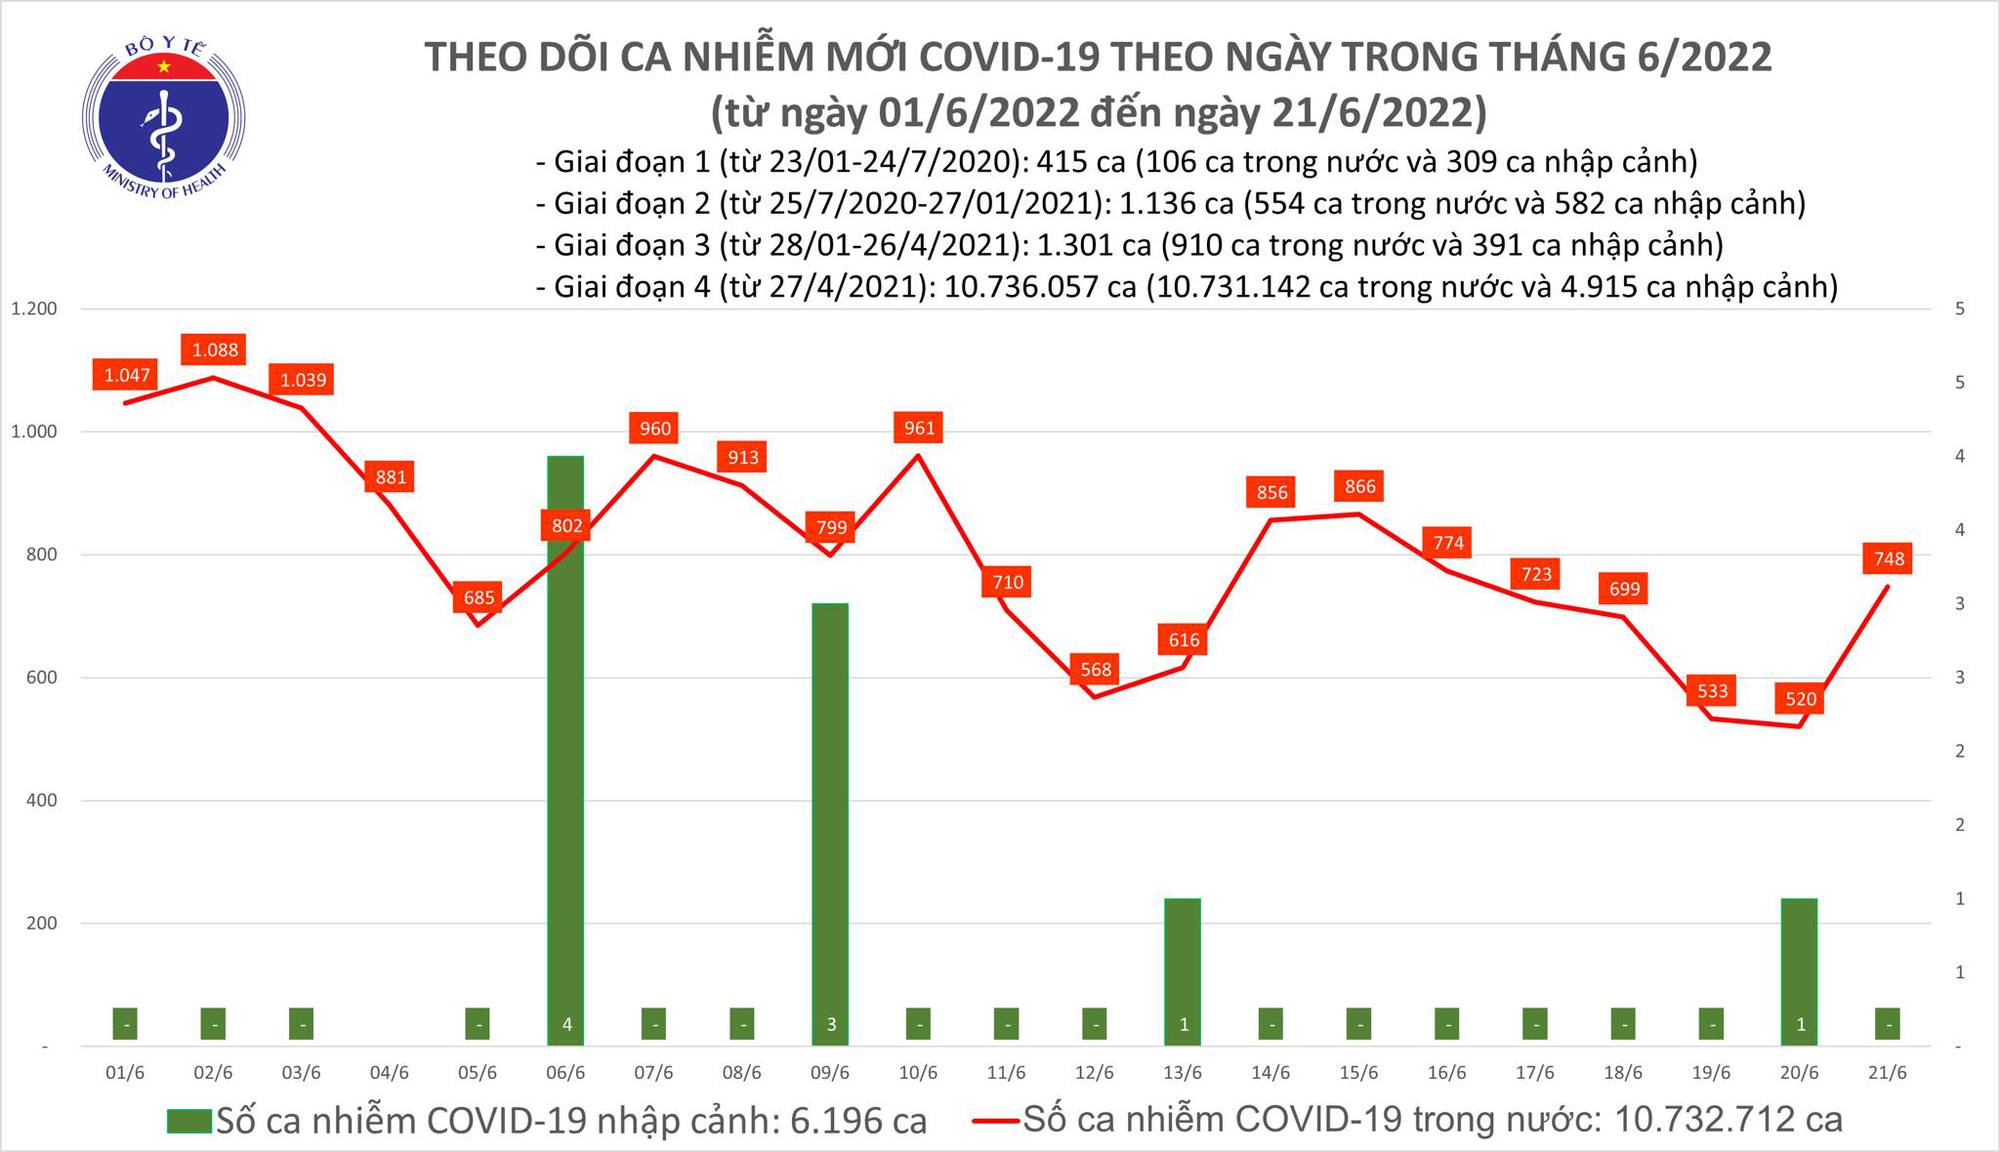 Ngày 21/6: Ca COVID-19 tăng lên 748; có 1 F0 tử vong tại Bến Tre